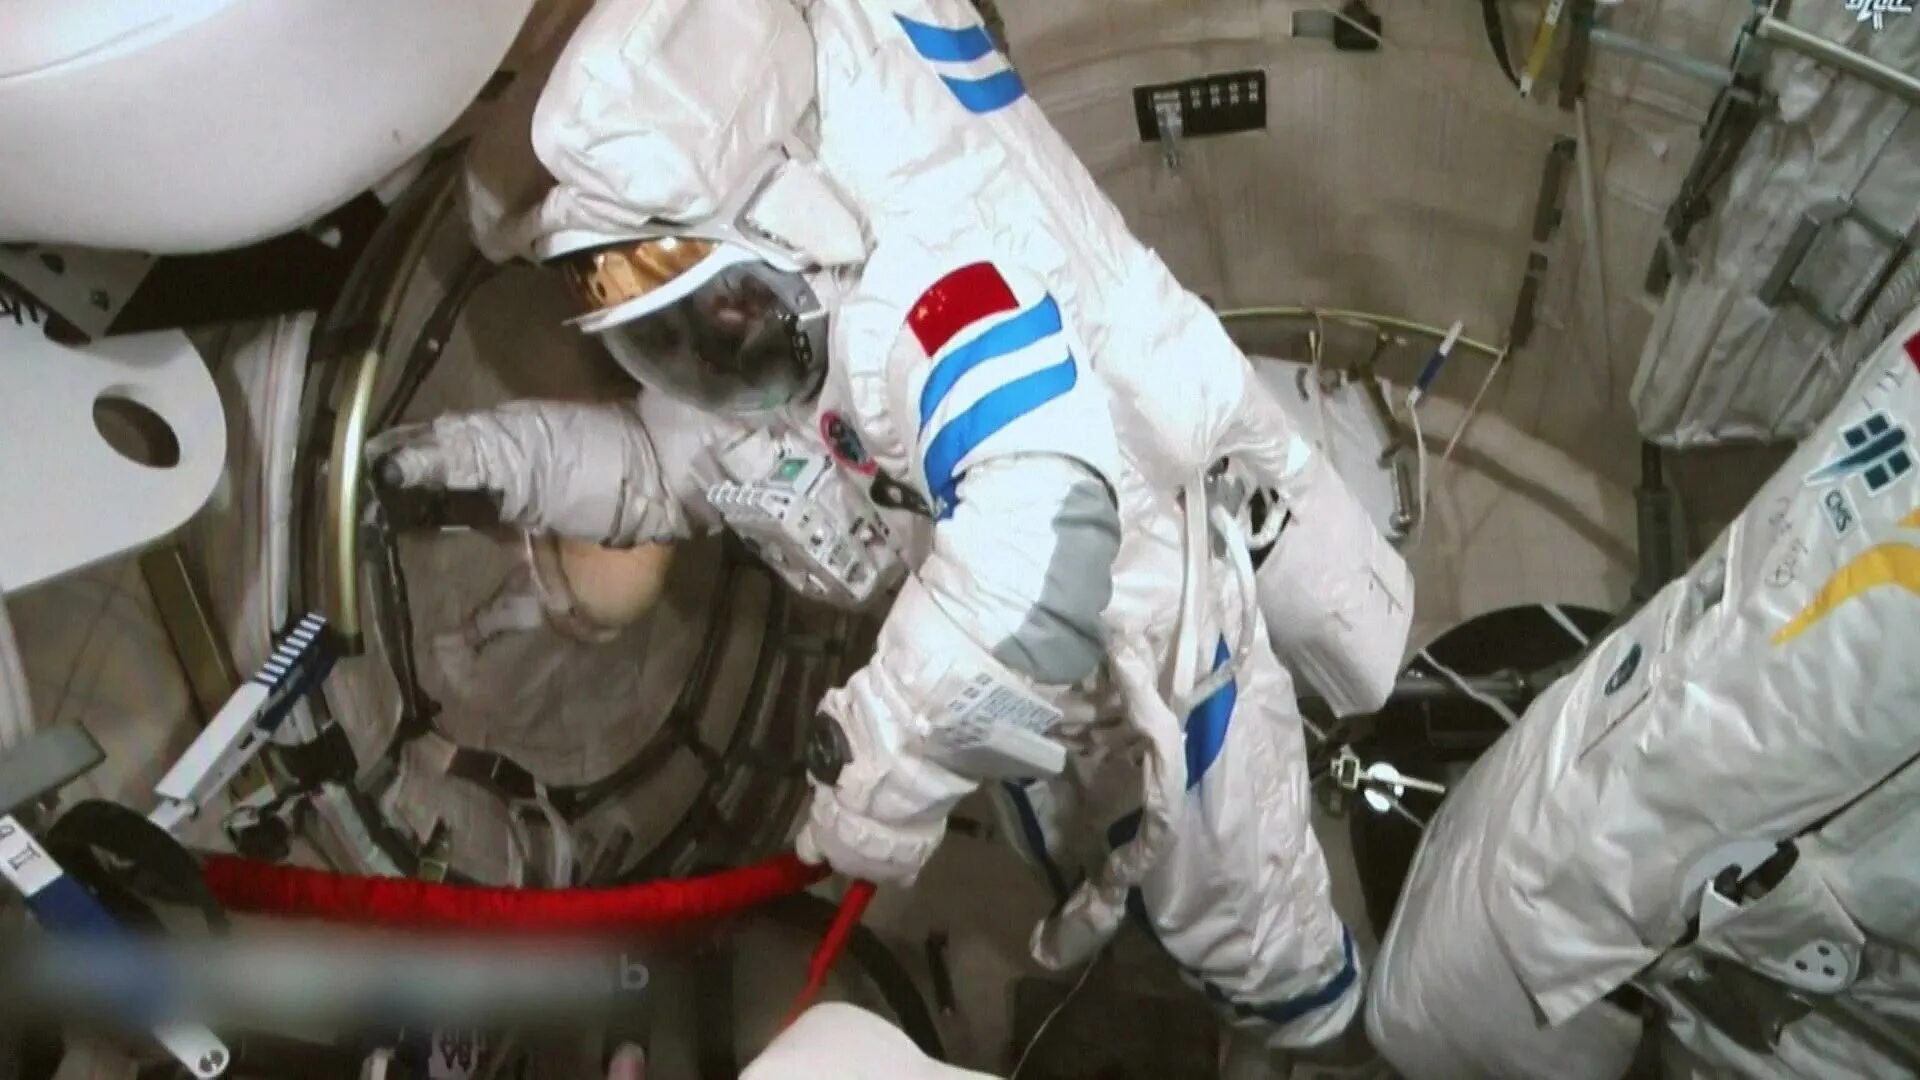 Первый астронавт вышедший в открытый космос. Выход Леонова в открытый космос. Shenzhou 14 Crew. Скафандр Космонавта Орлан.